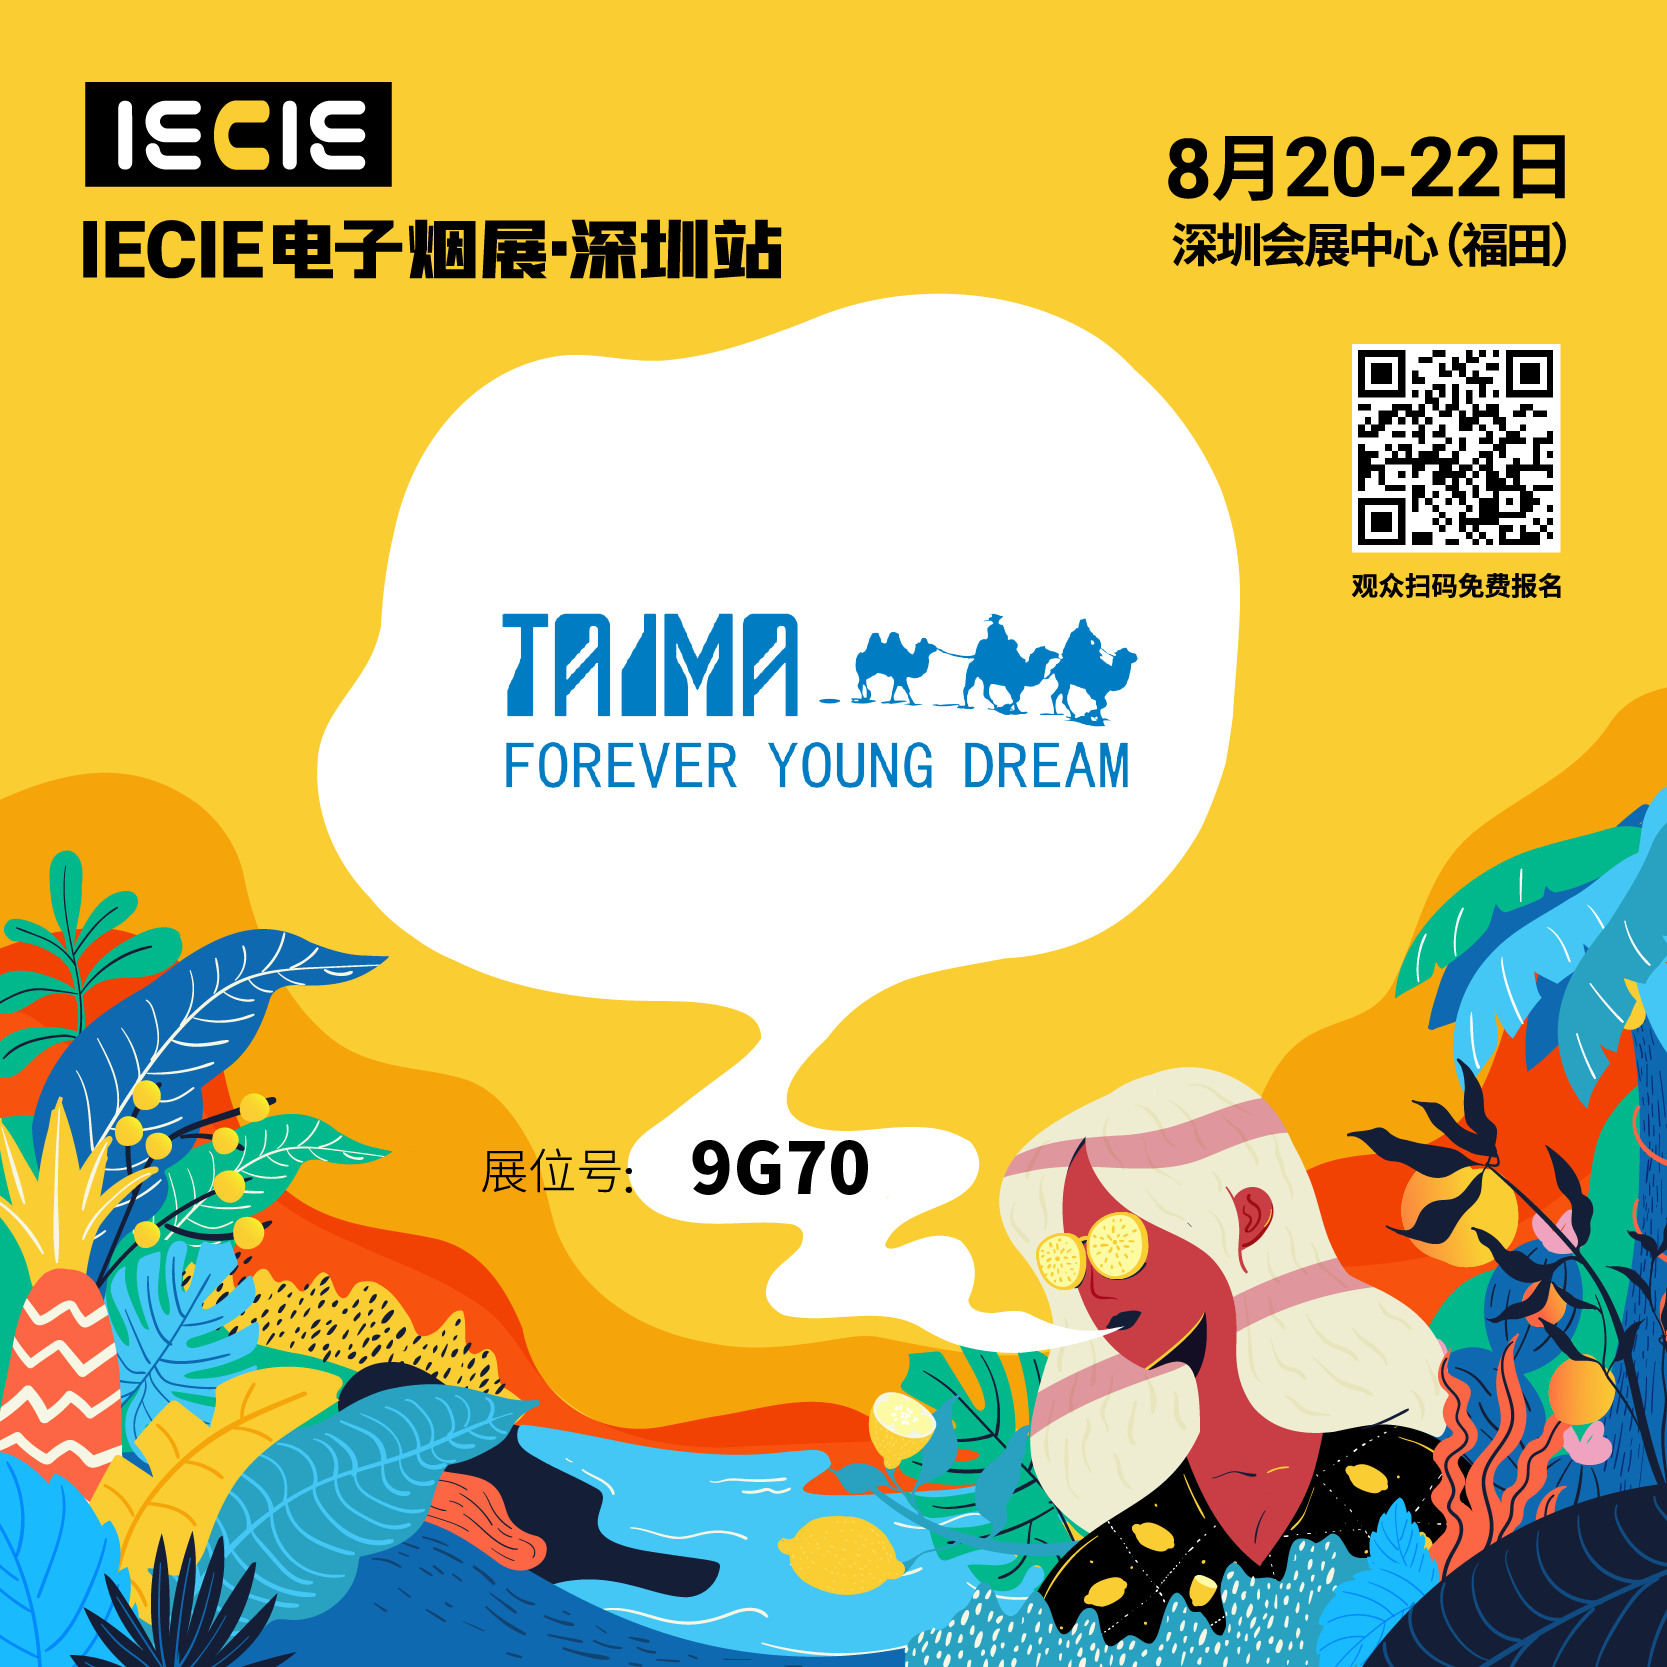 Shenzhen Ecig Expo, Aug 20-22. Xian Taima NO. 9G70